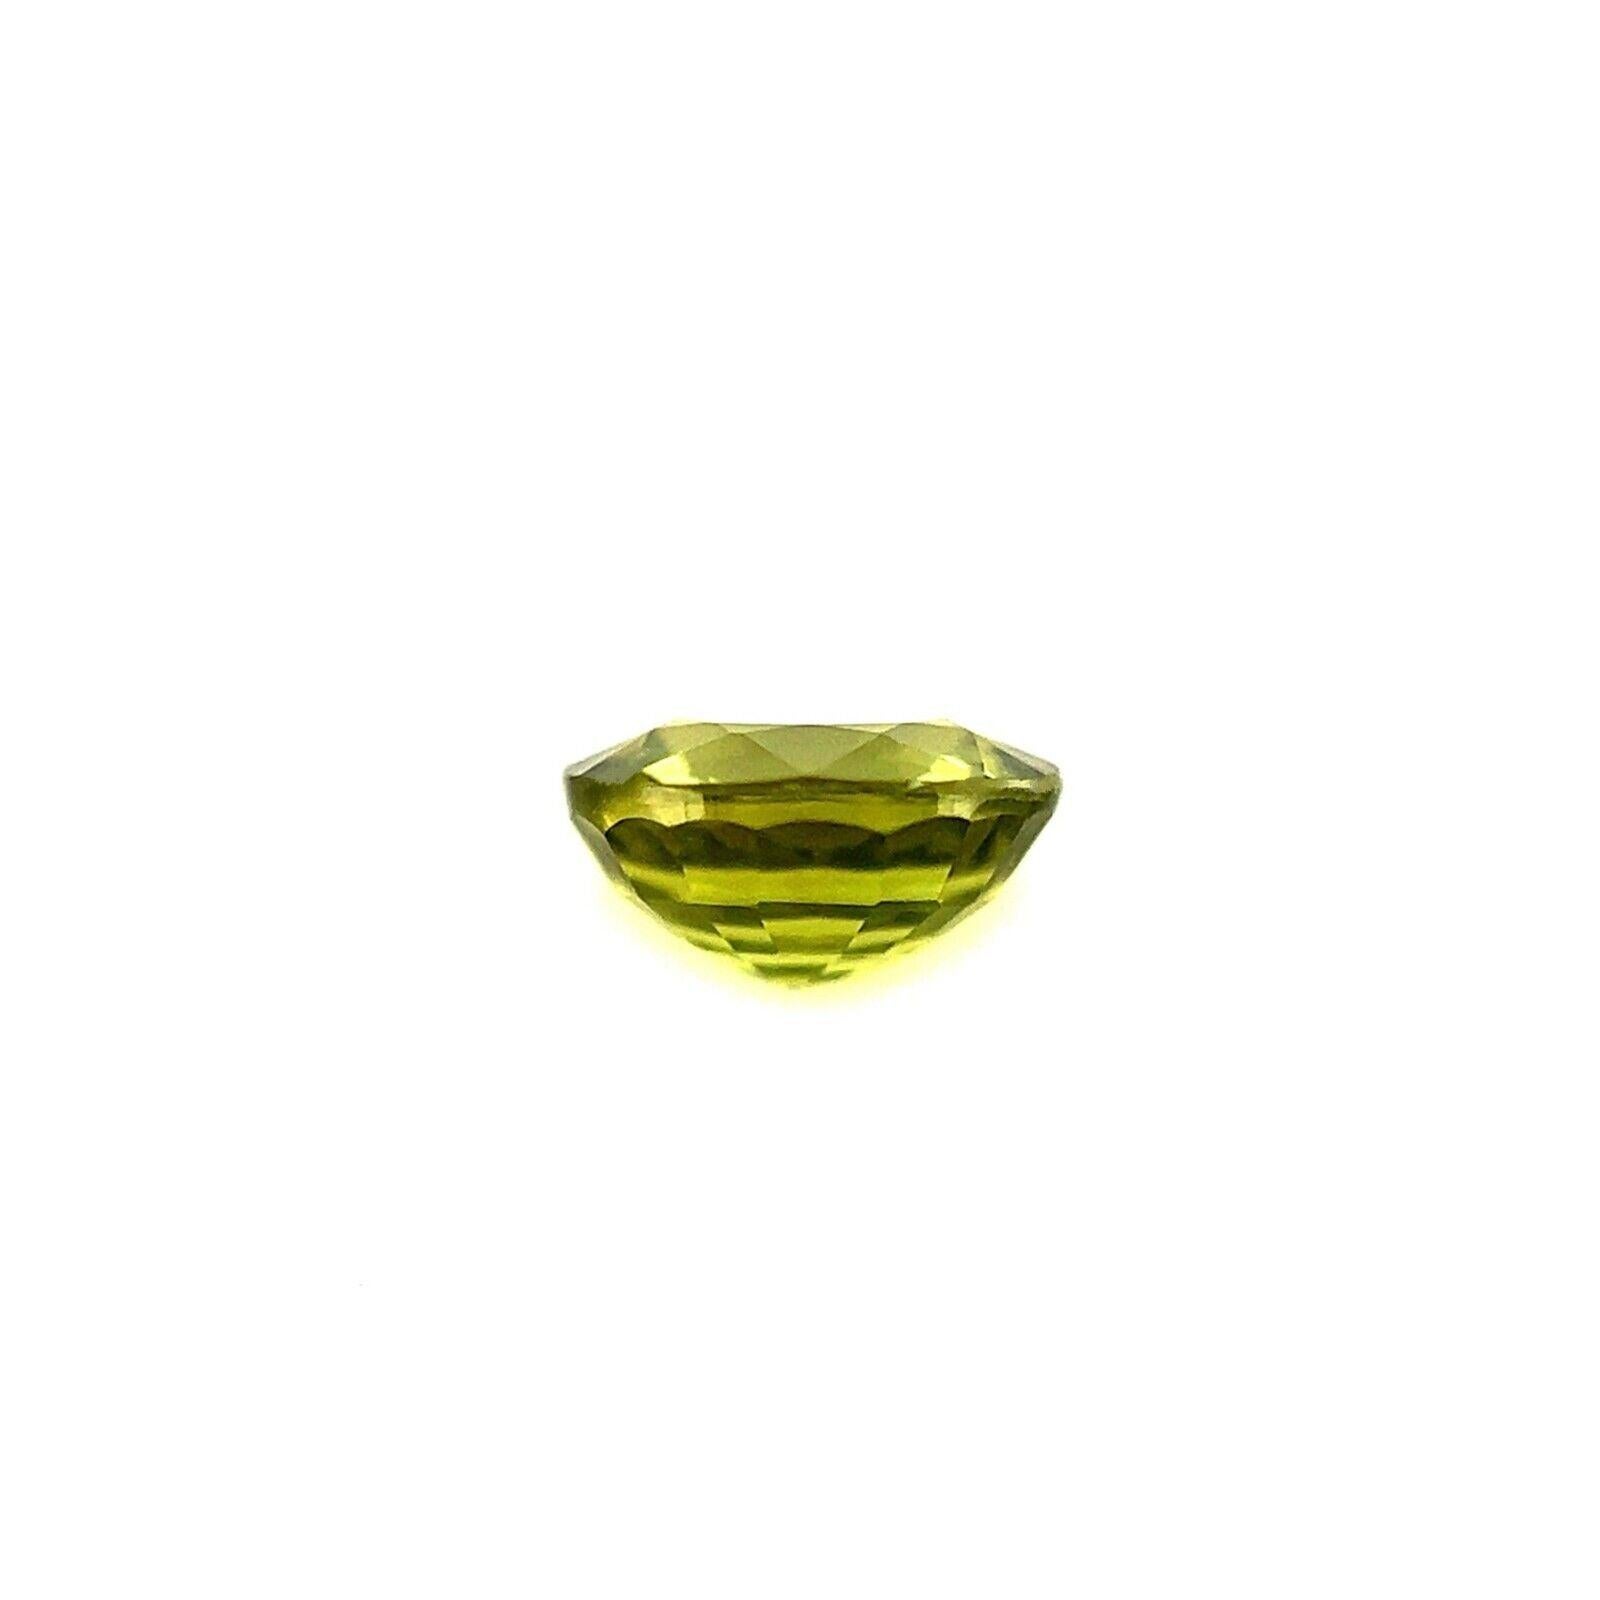 0.72ct Feiner lebhafter grüner natürlicher Saphir Ovalschliff Loser seltener Edelstein 5.3x5mm VS

Feiner natürlicher lebhaft grüner Saphir Edelstein. 0,72 Karat Stein mit einer schönen lebendigen grünen Farbe und ausgezeichnete Klarheit, ein sehr